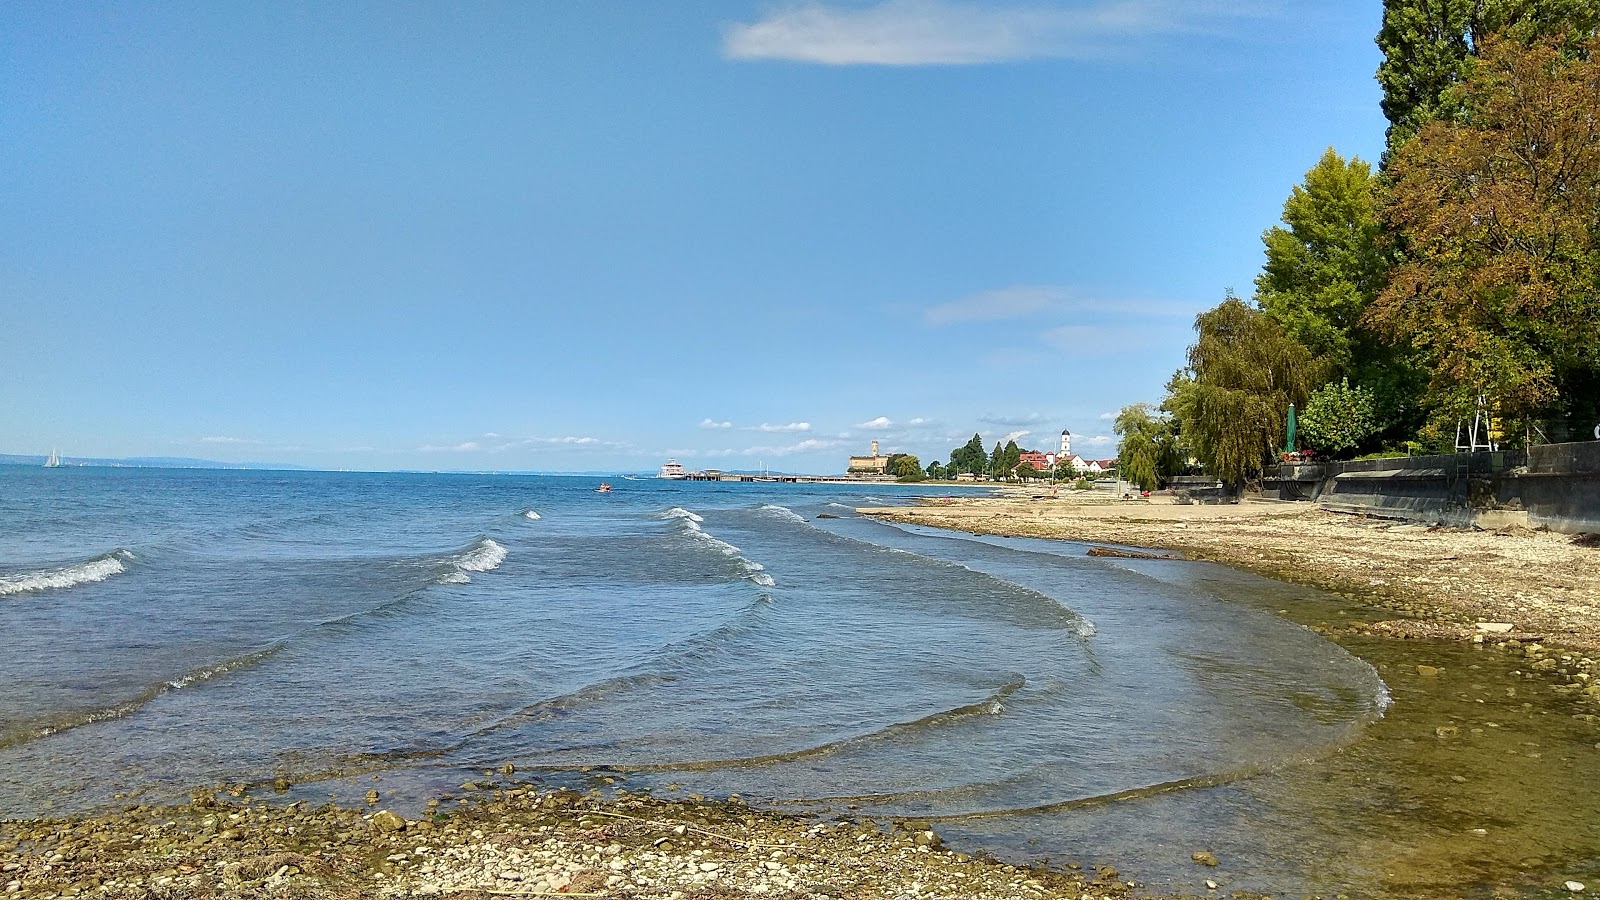 Malerecke strand II'in fotoğrafı gri çakıl taşı yüzey ile